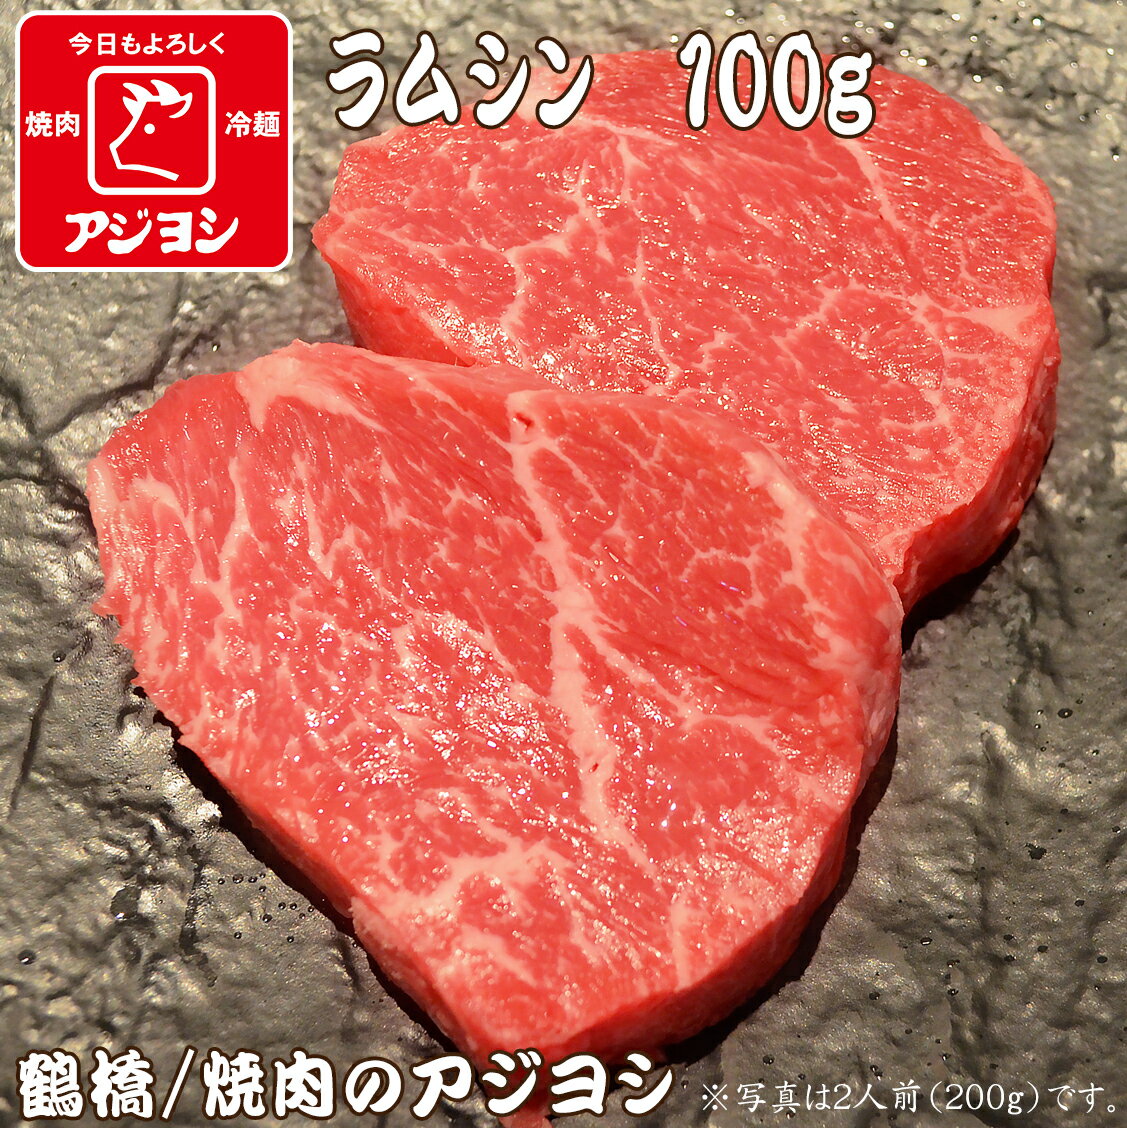 【鶴橋・焼肉のアジヨシ】牛肉 国産 ラムシン100g